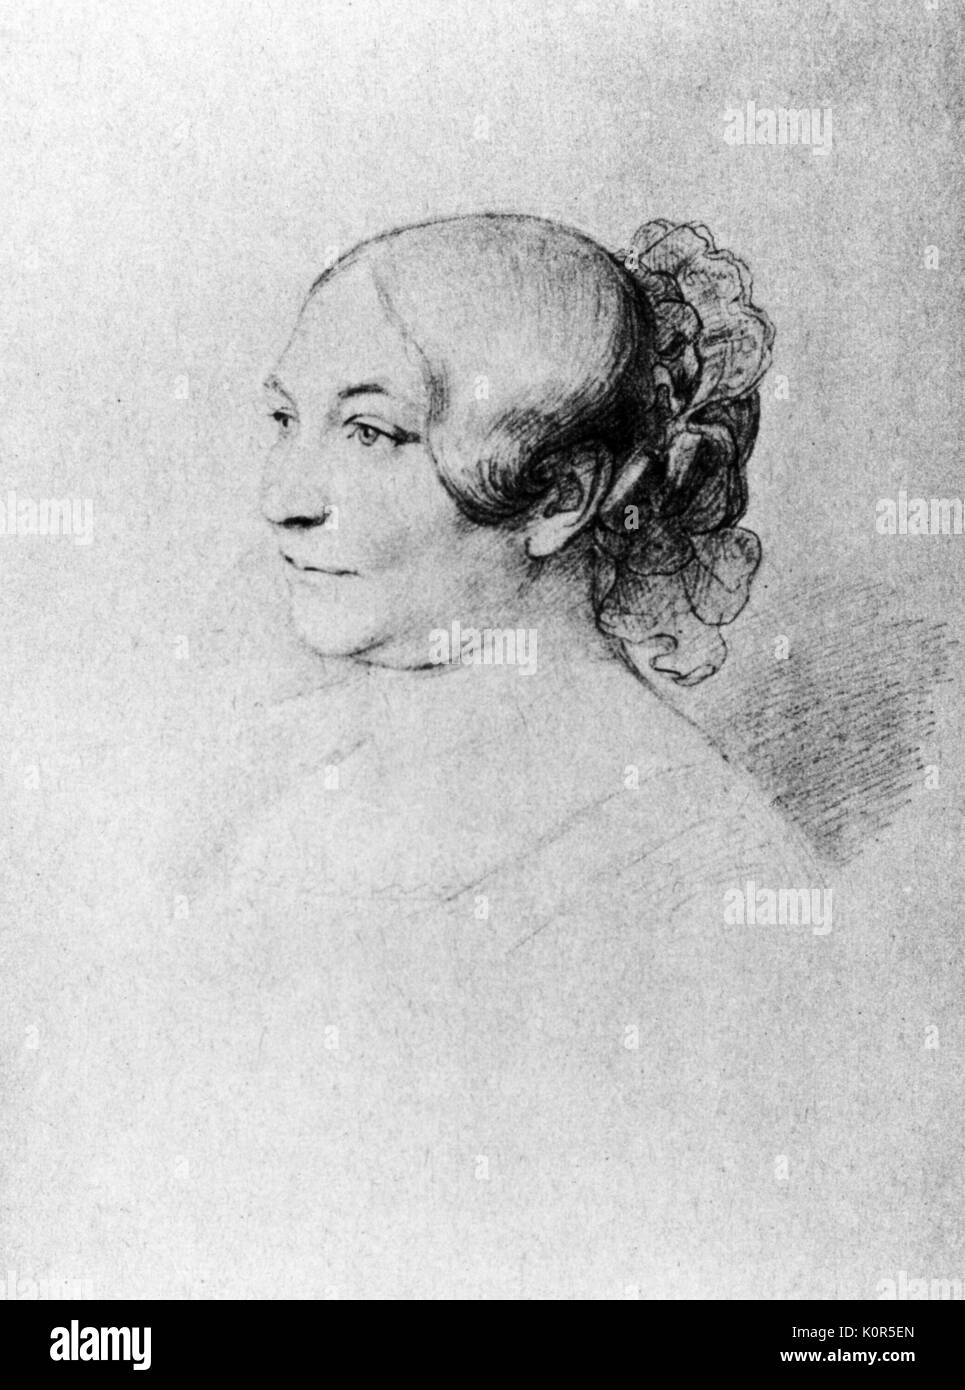 Caroline von Weber - wife of Carl Maria von Weber. Czech singer. Drawing by her son Alexander. Stock Photo